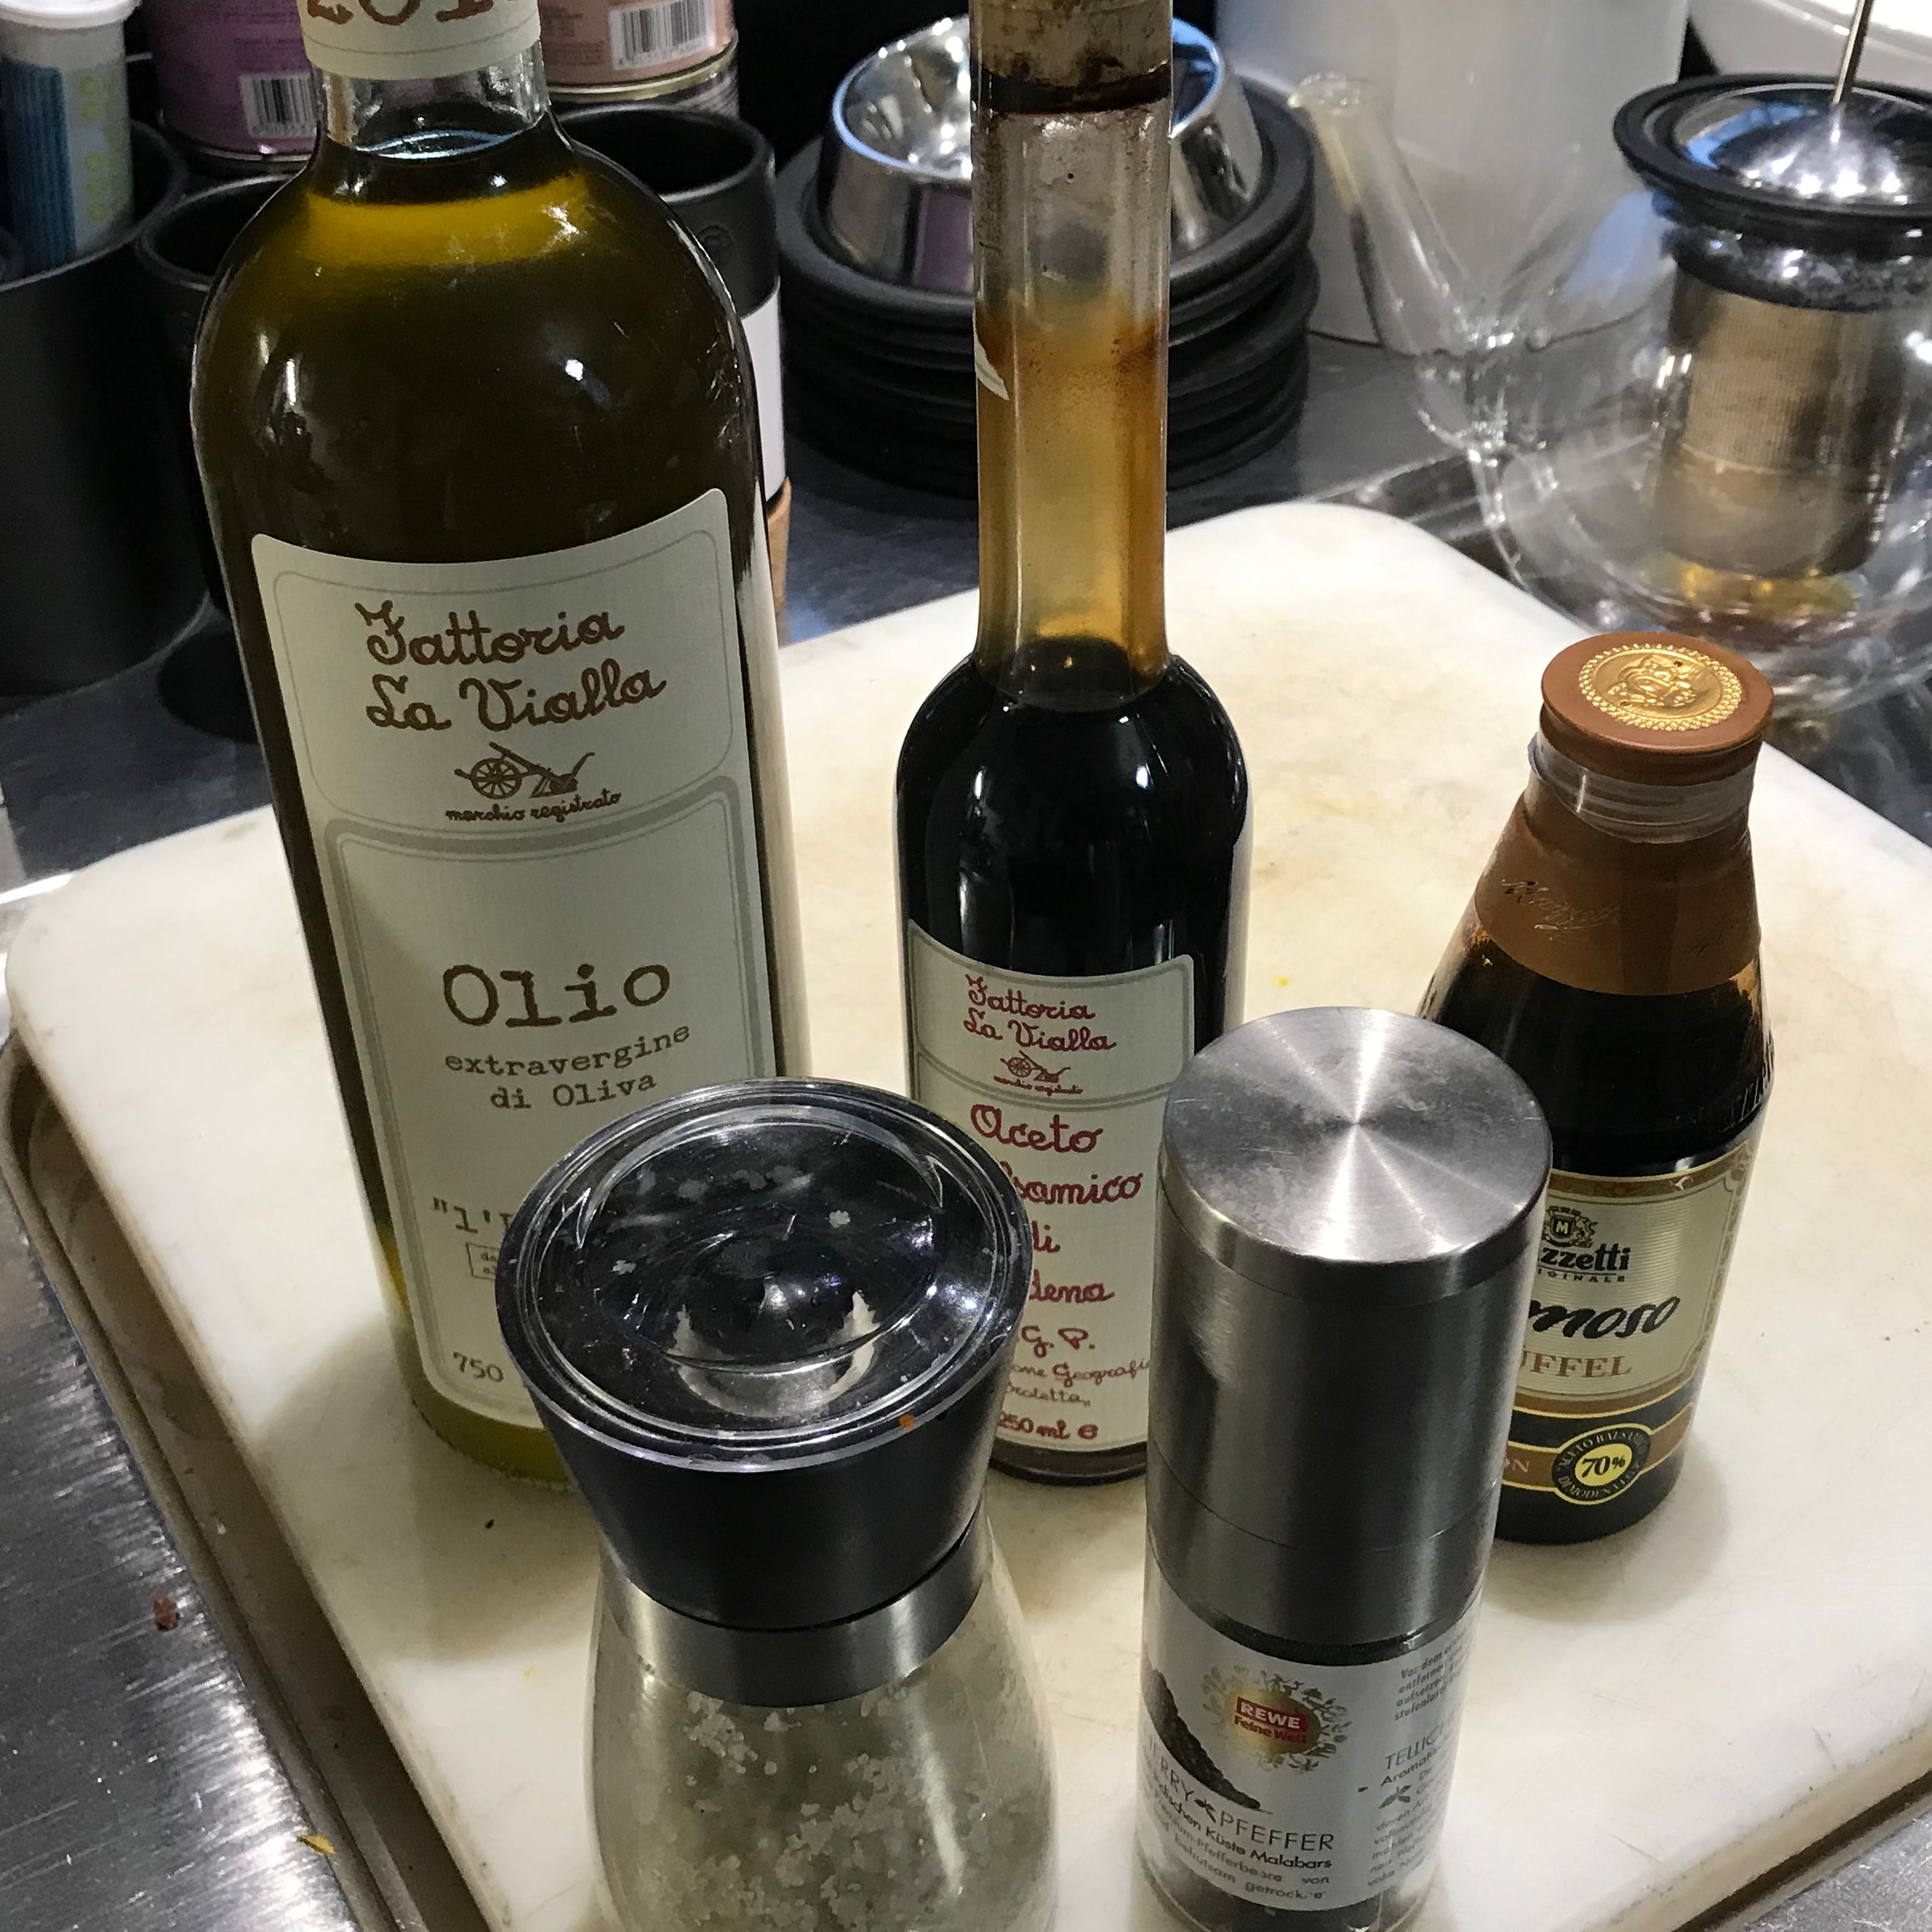 Olivenöl, Balsamico, Salz und Pfeffer vorbereiten. Fleisch mit Olivenöl, Salz und Pfeffer einreiben und grillen oder in der Pfanne braten. Je nach Dicke des Fleisches und Präferenz , sollte es in den Ofen für 10-15 minuten in Alufolie und bei 100 grad nachgaren